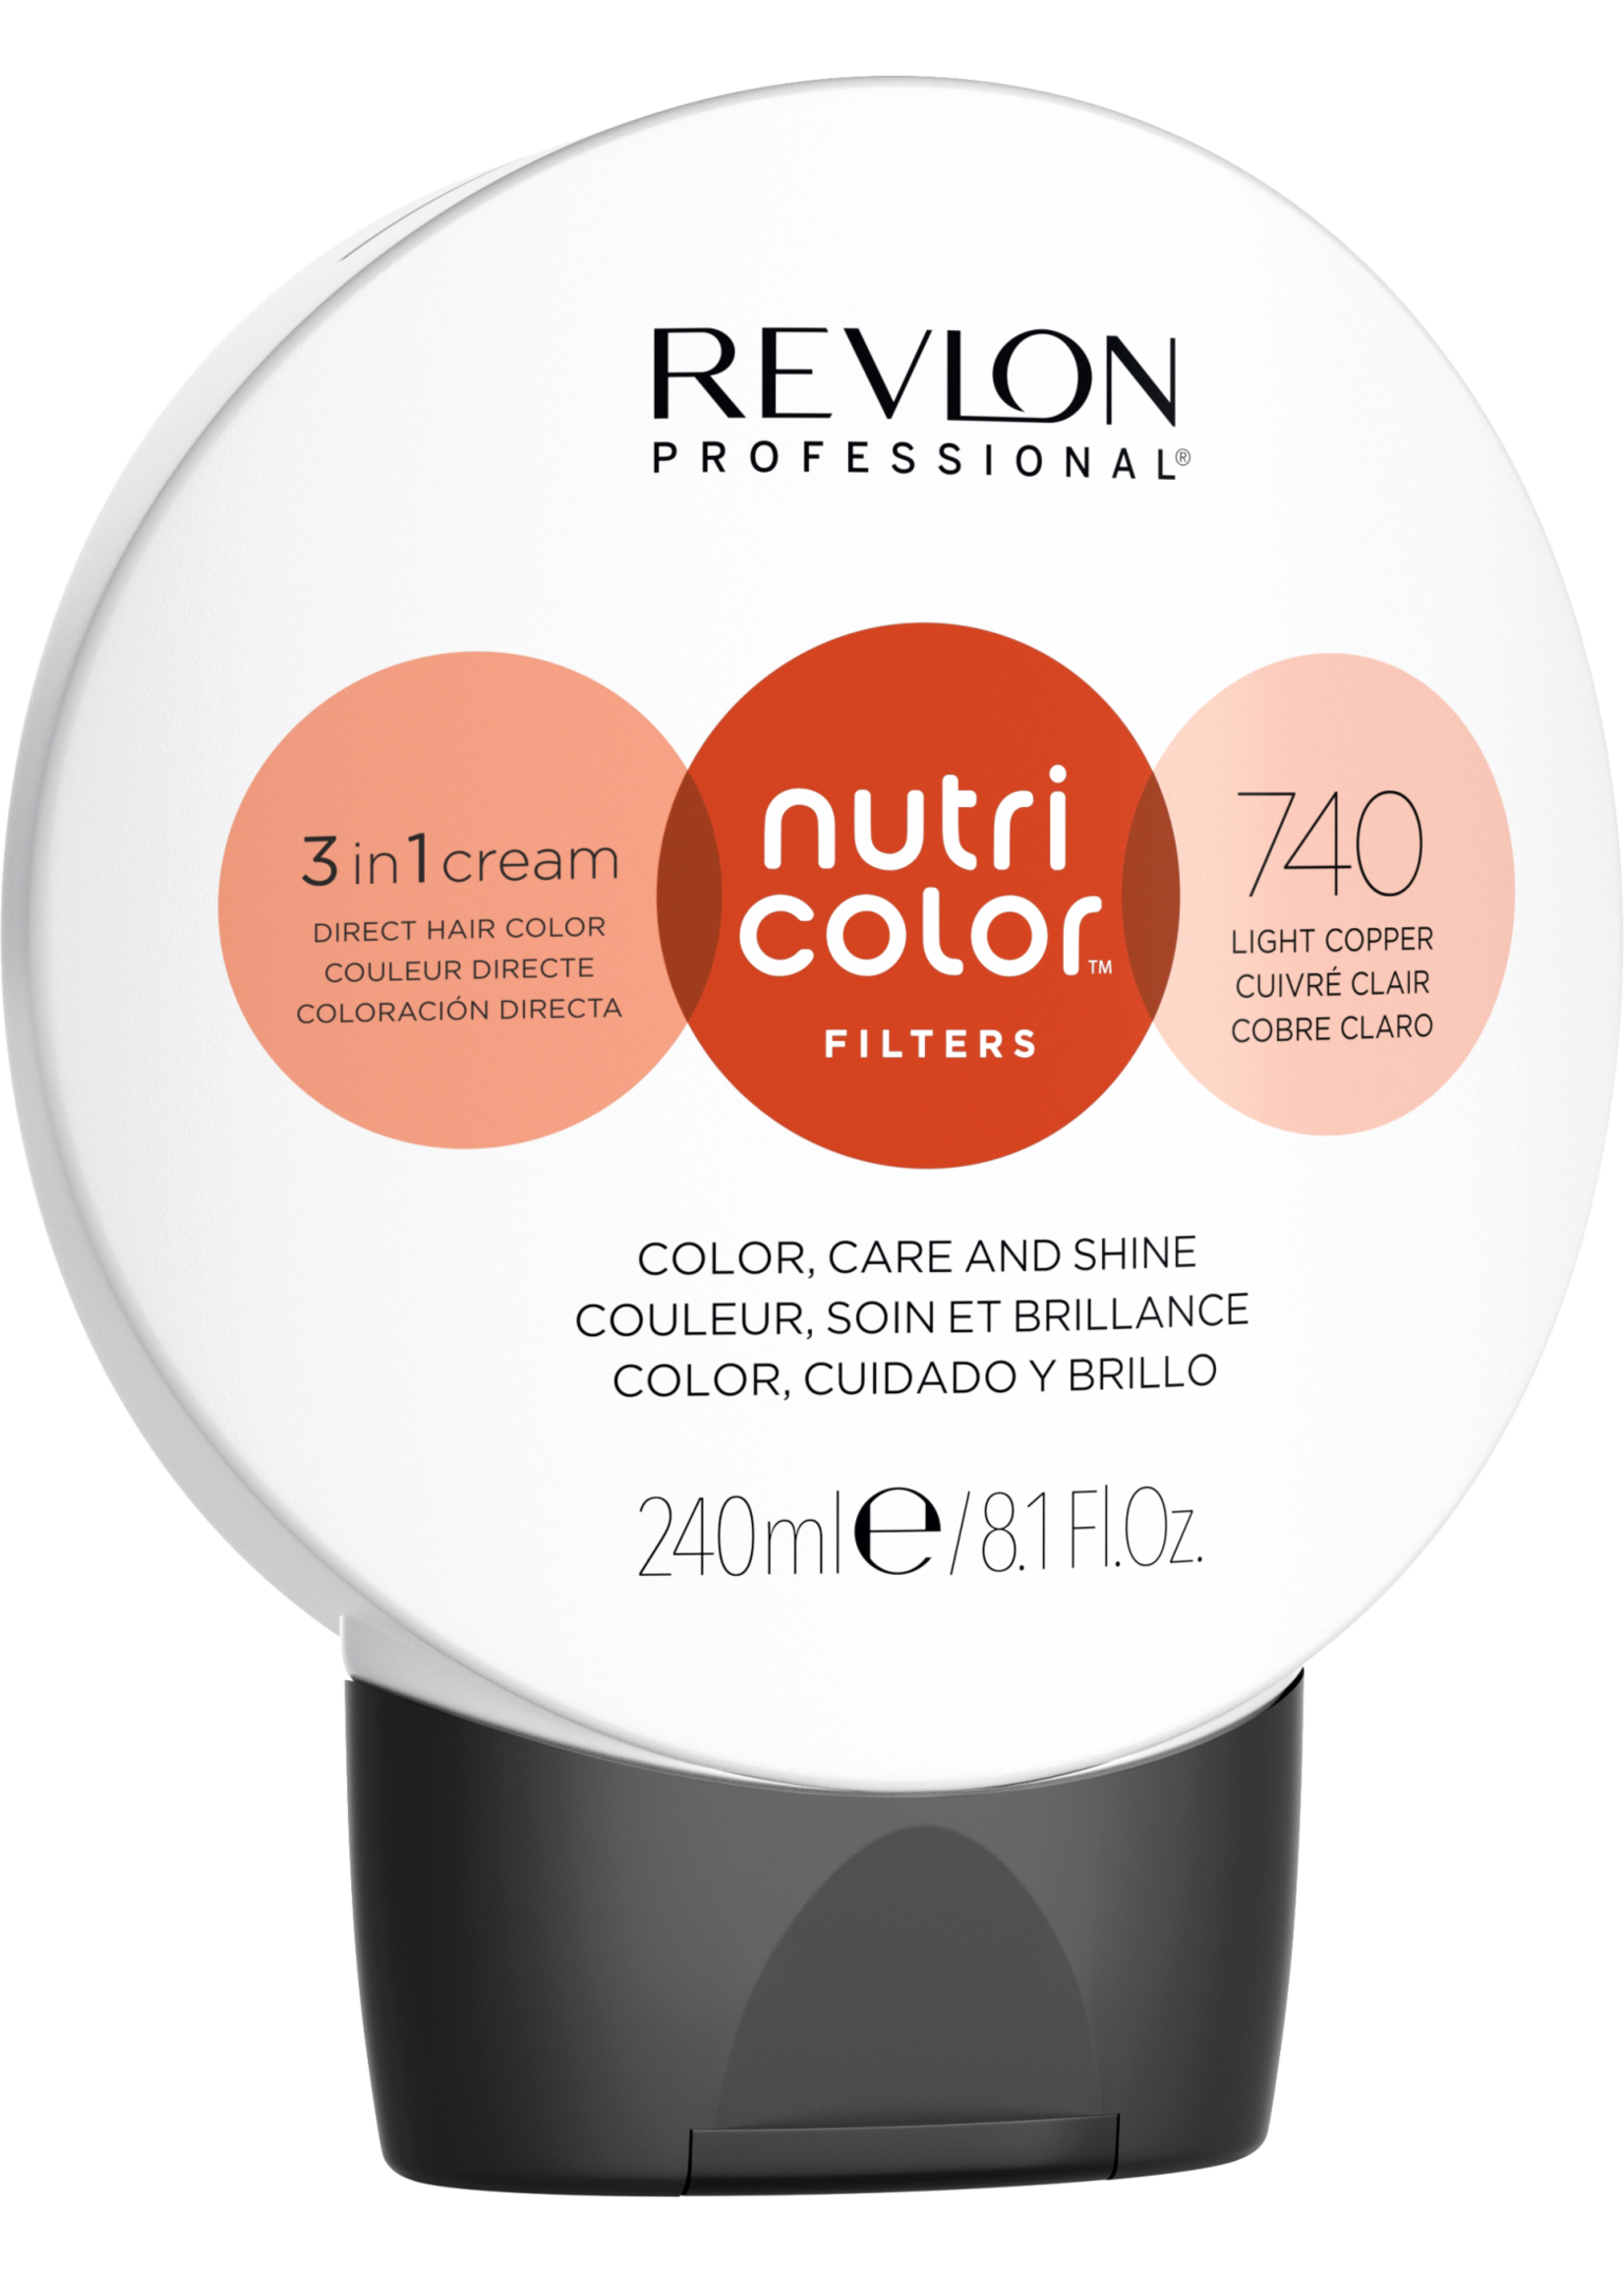 Revlon Professional Revlon Professional Nutri Color Filters 740  Light Copper 240ml